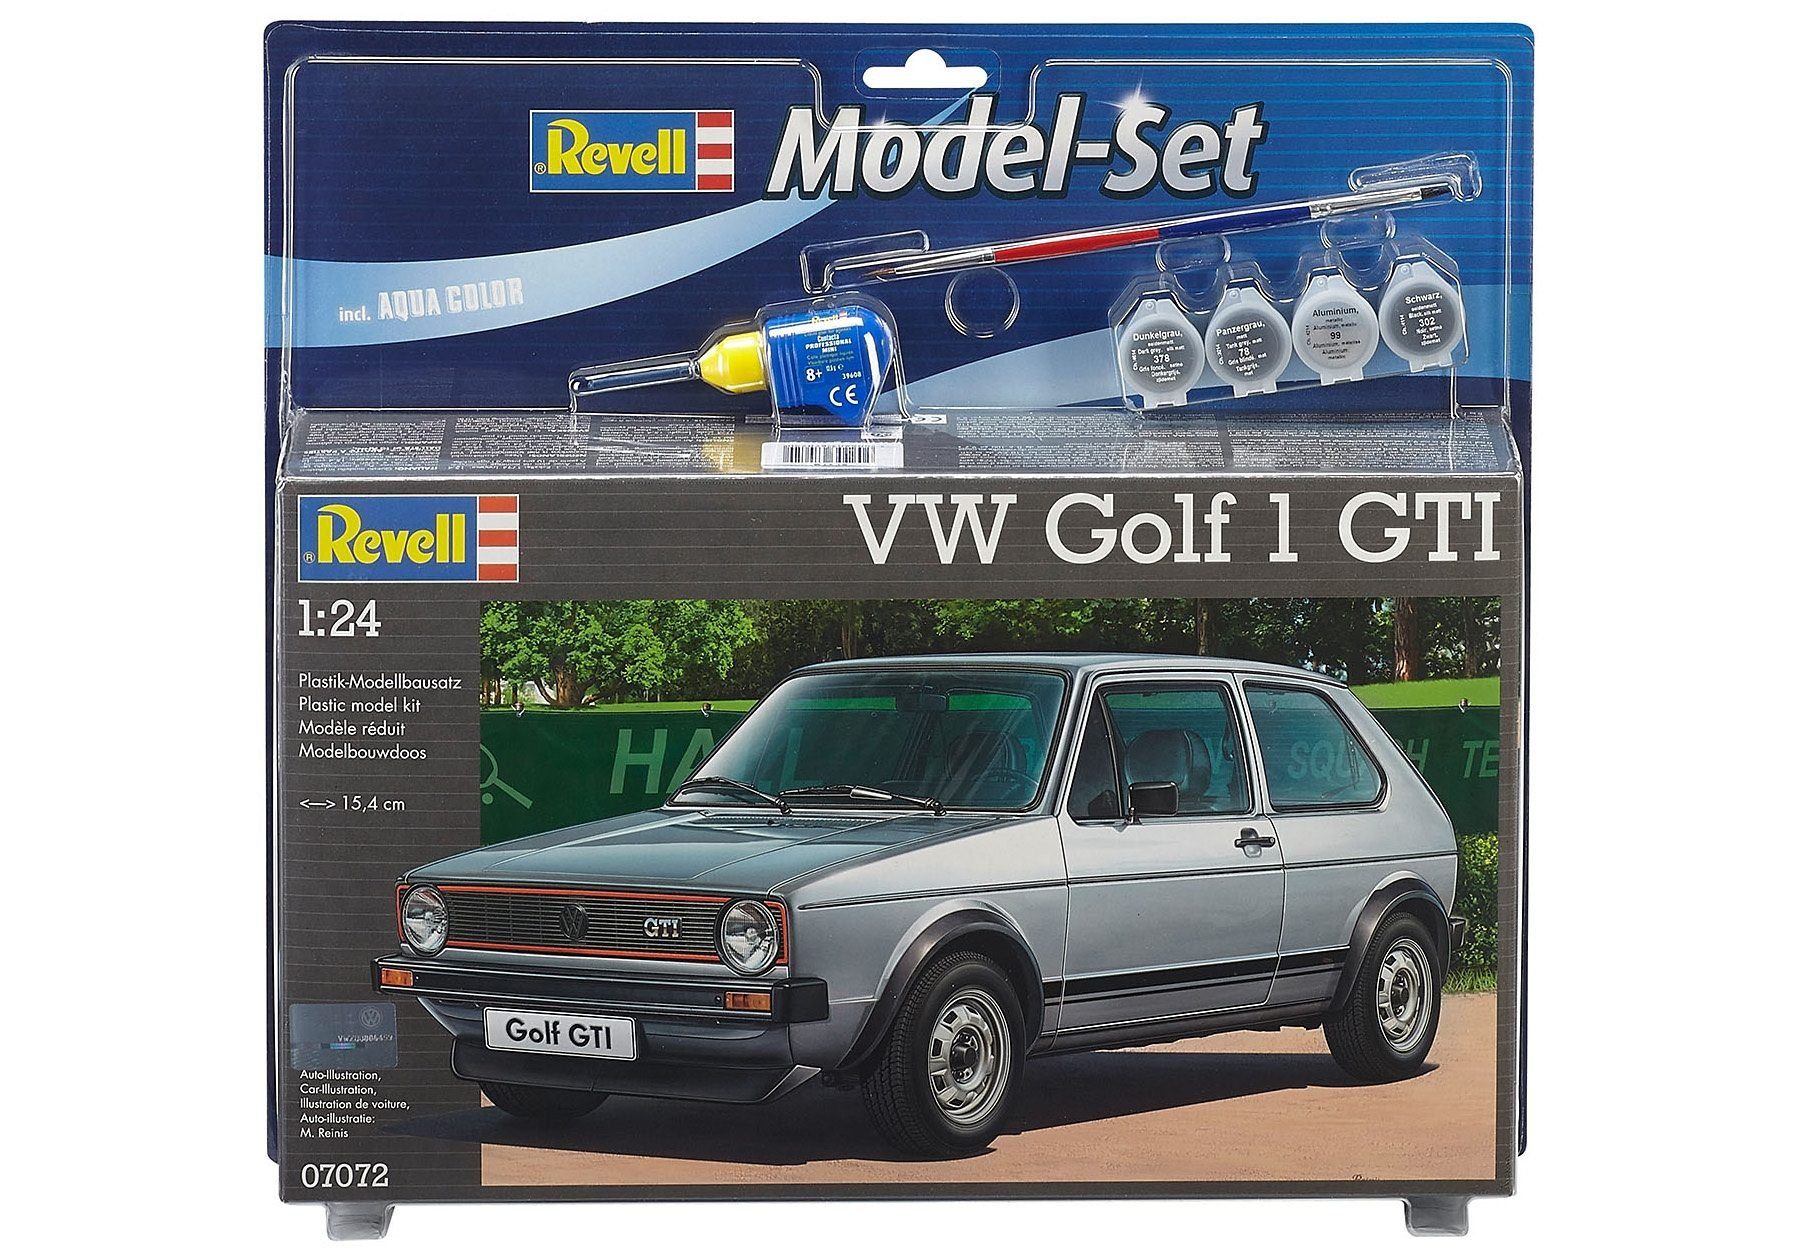 Revell® Modellbausatz Model-Set VW Golf 1 GTI, Maßstab 1:24, (Set), Made in Europe